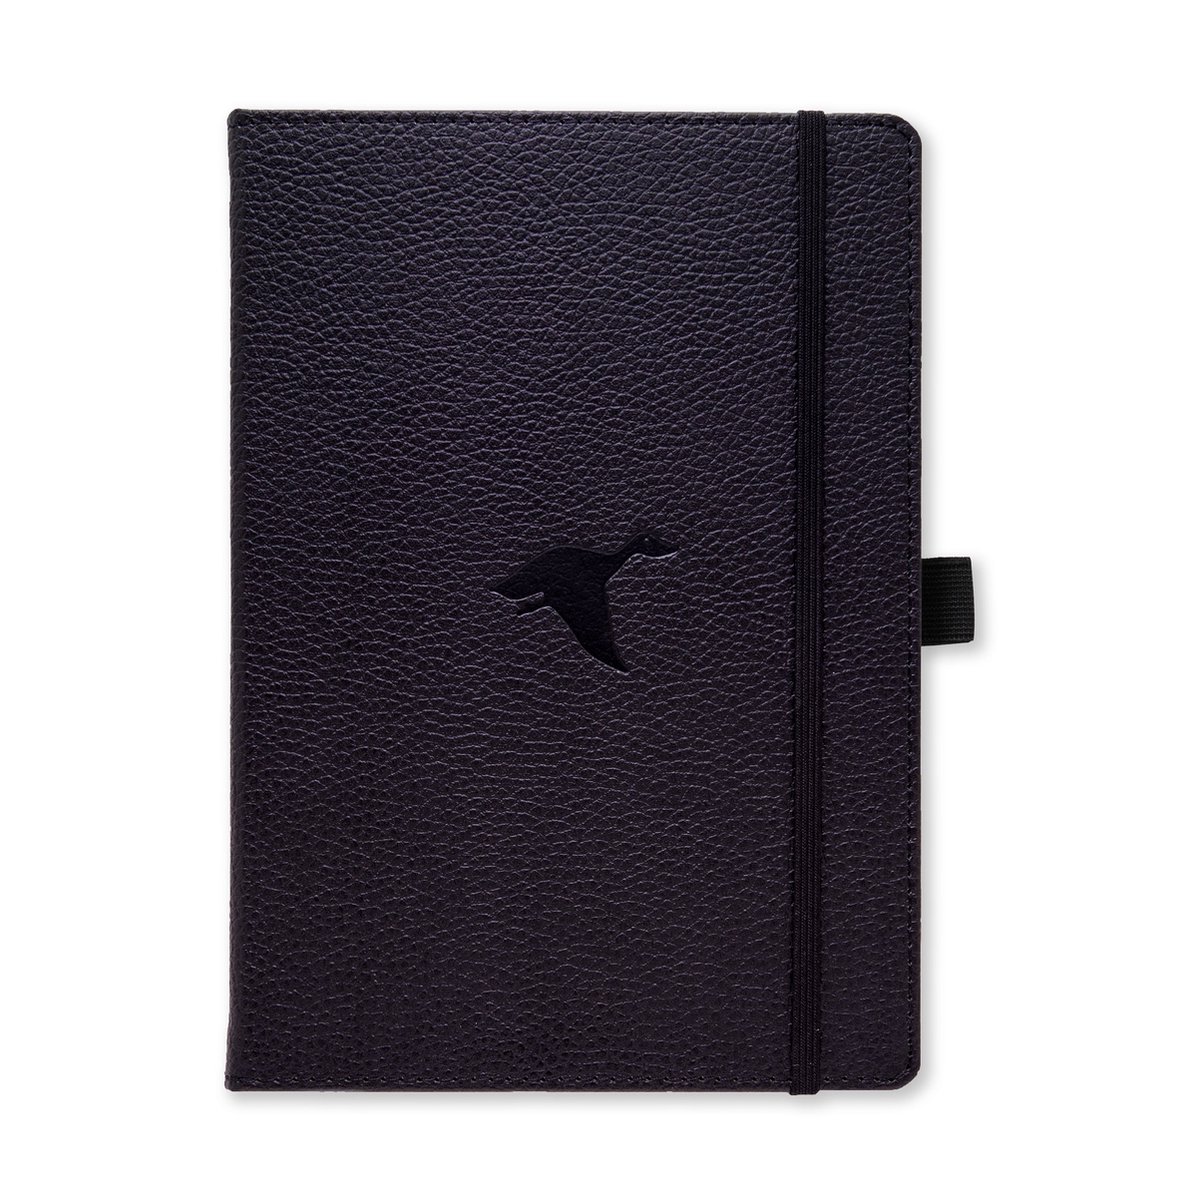 Dingbats* Wildlife A5 Notitieboek – Black Duck Stippen – Bullet Journal met 100 gsm Inktvrij Papier – Schetsboek met Harde Kaft, Binnenvak, Elastische Sluiting en Bladwijzer